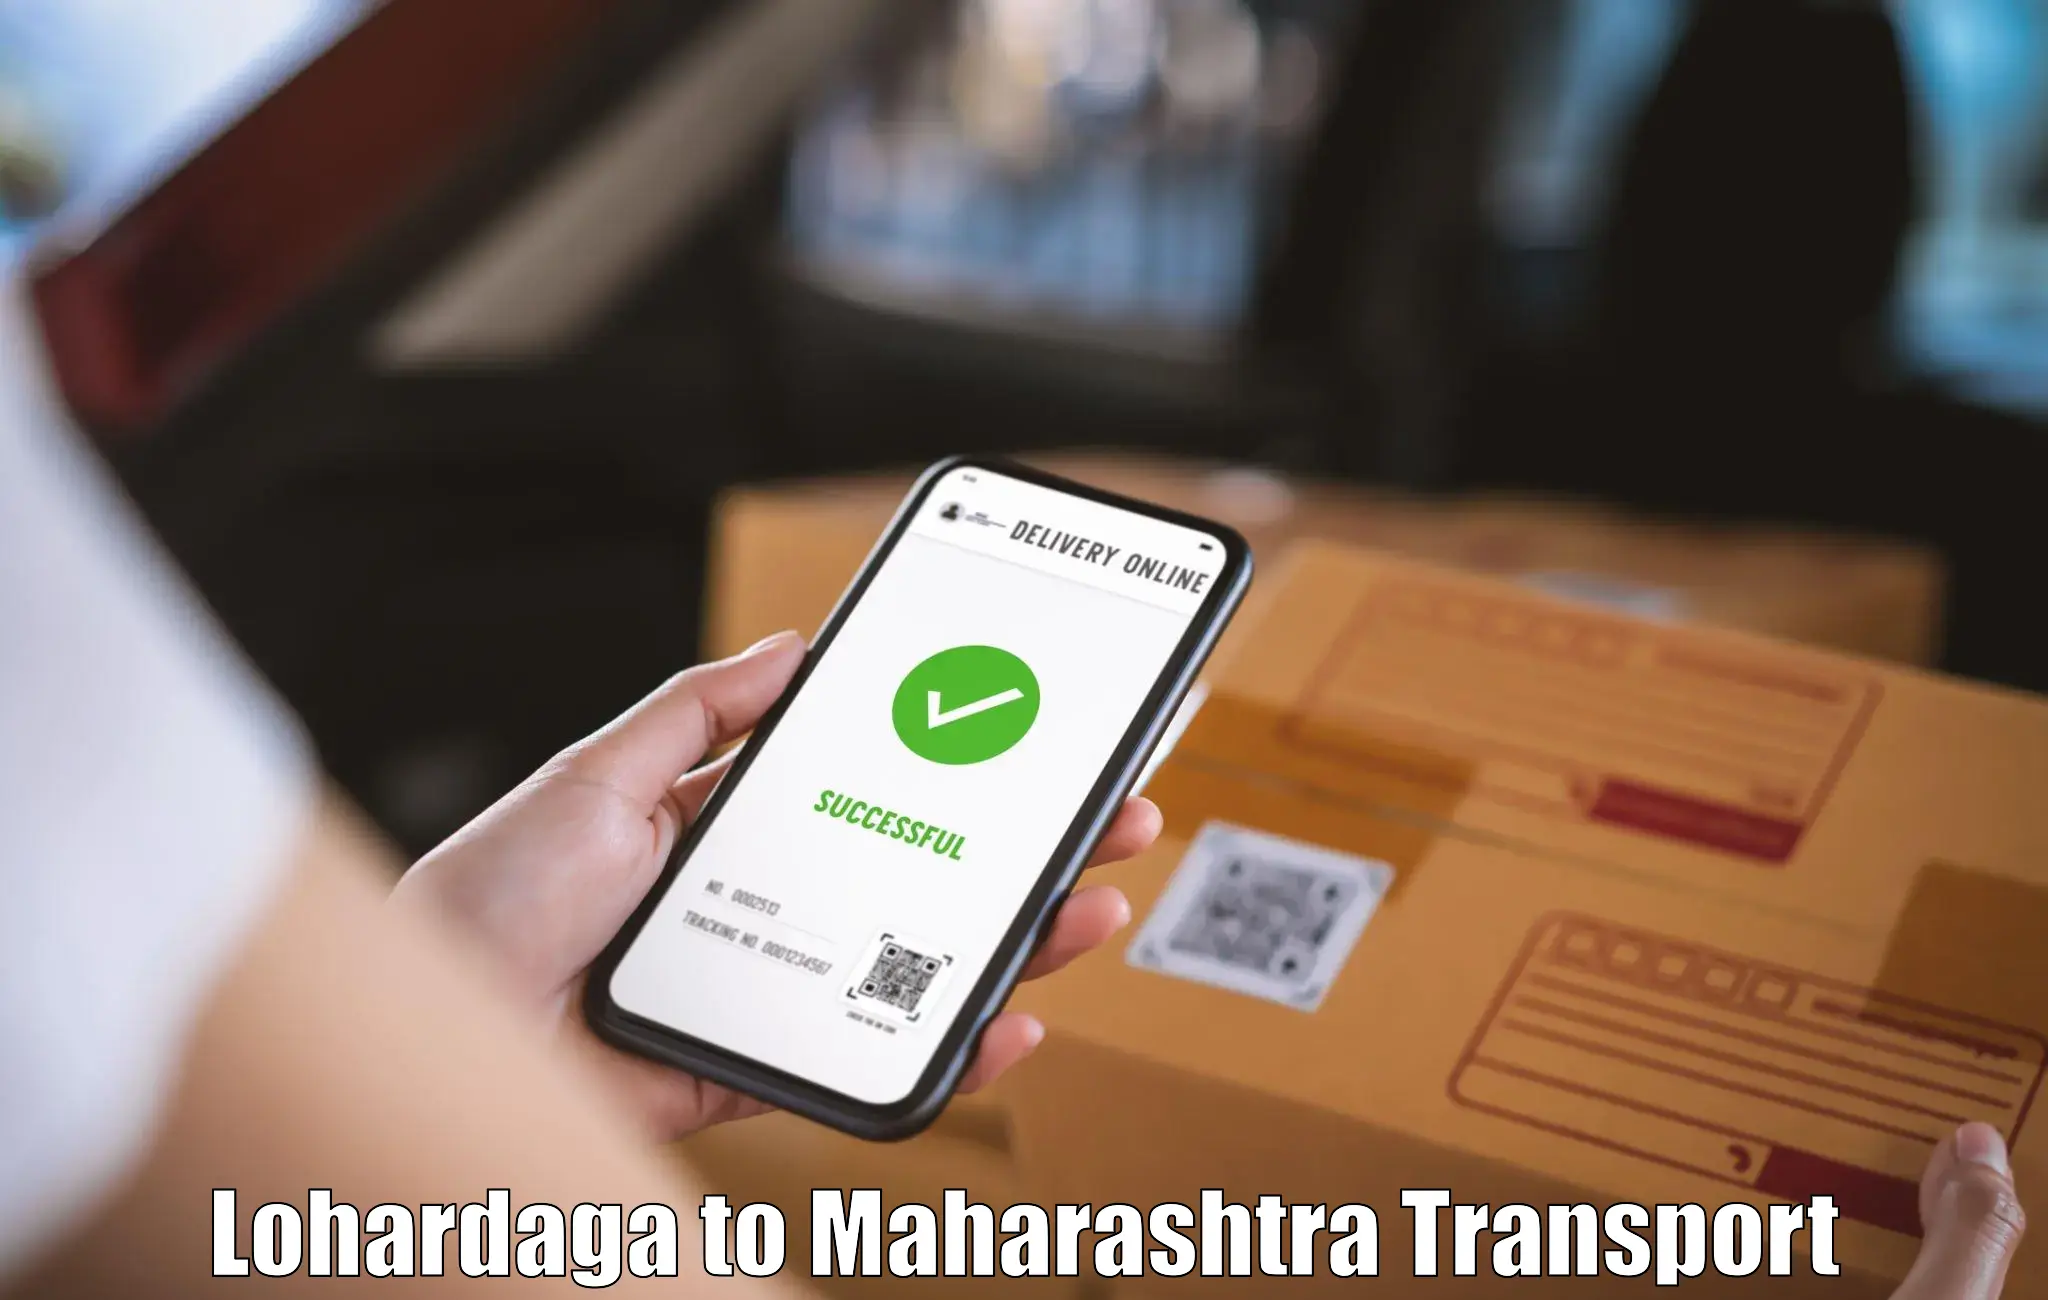 Material transport services in Lohardaga to Maharashtra